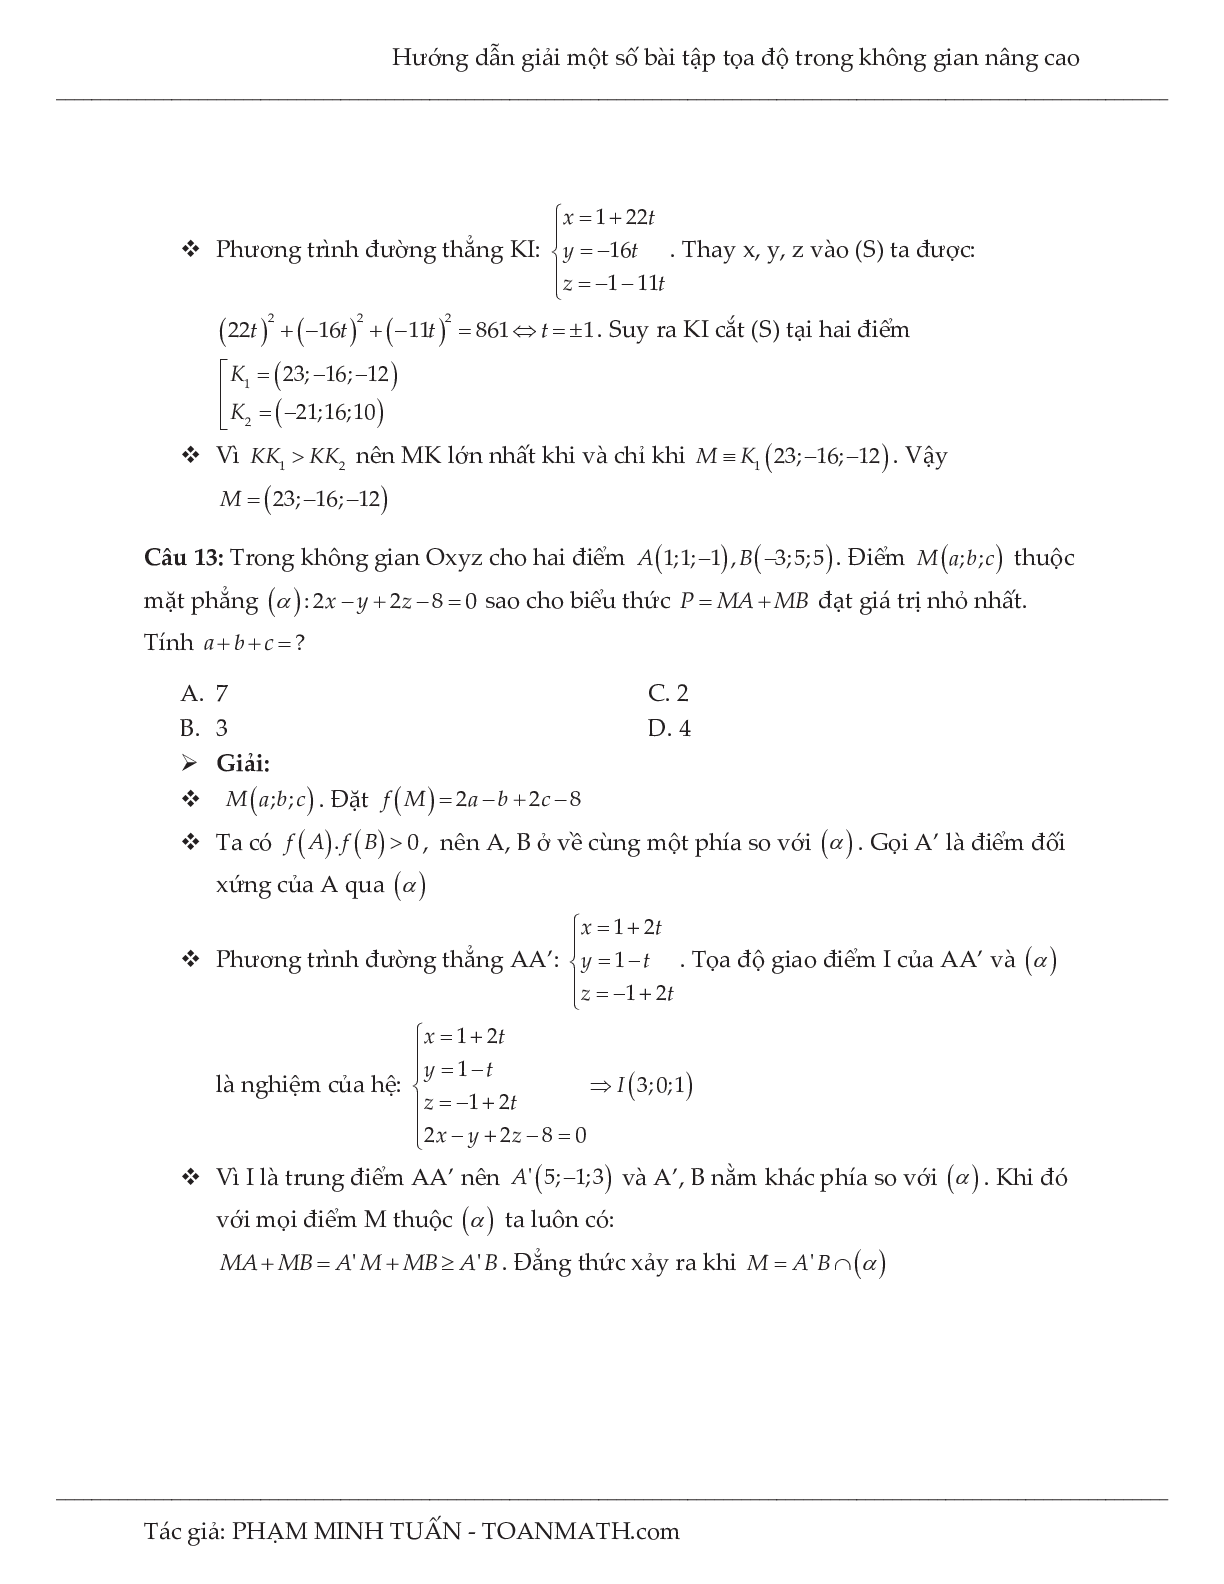 Hướng dẫn giải một số bài tập tọa độ trong không gian nâng cao môn Toán lớp 12 (trang 8)